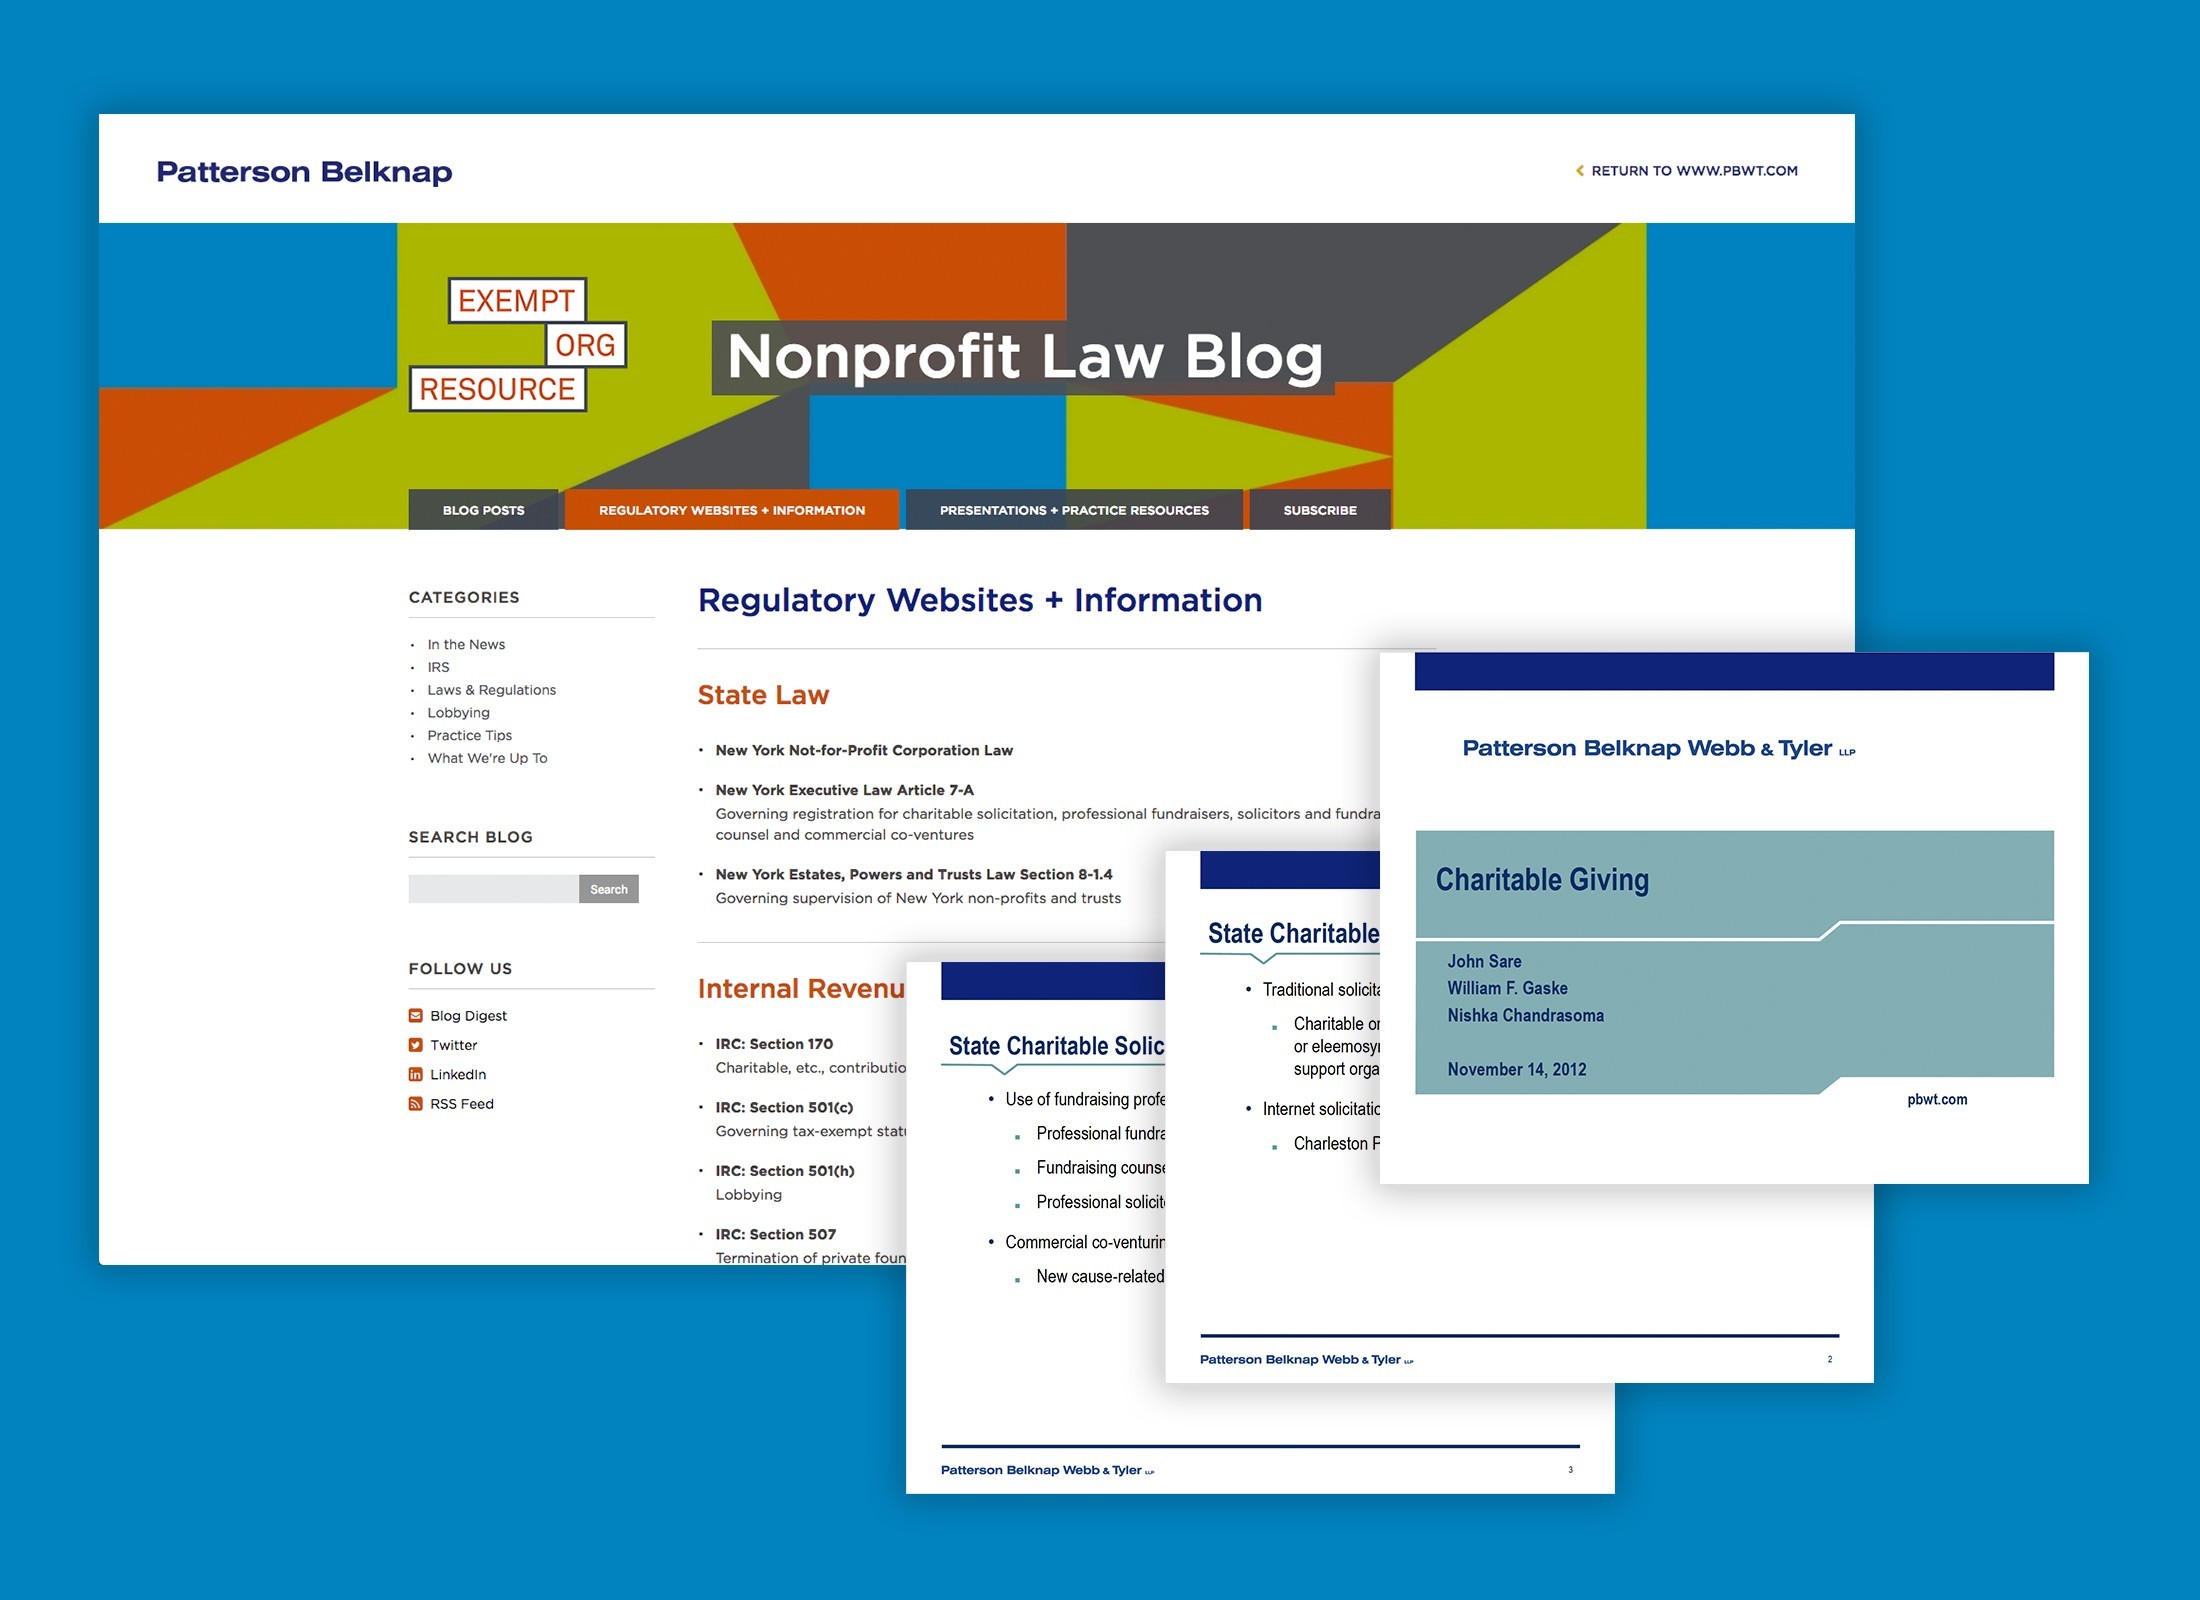 Patterson Belknap Law Blog Design NYC